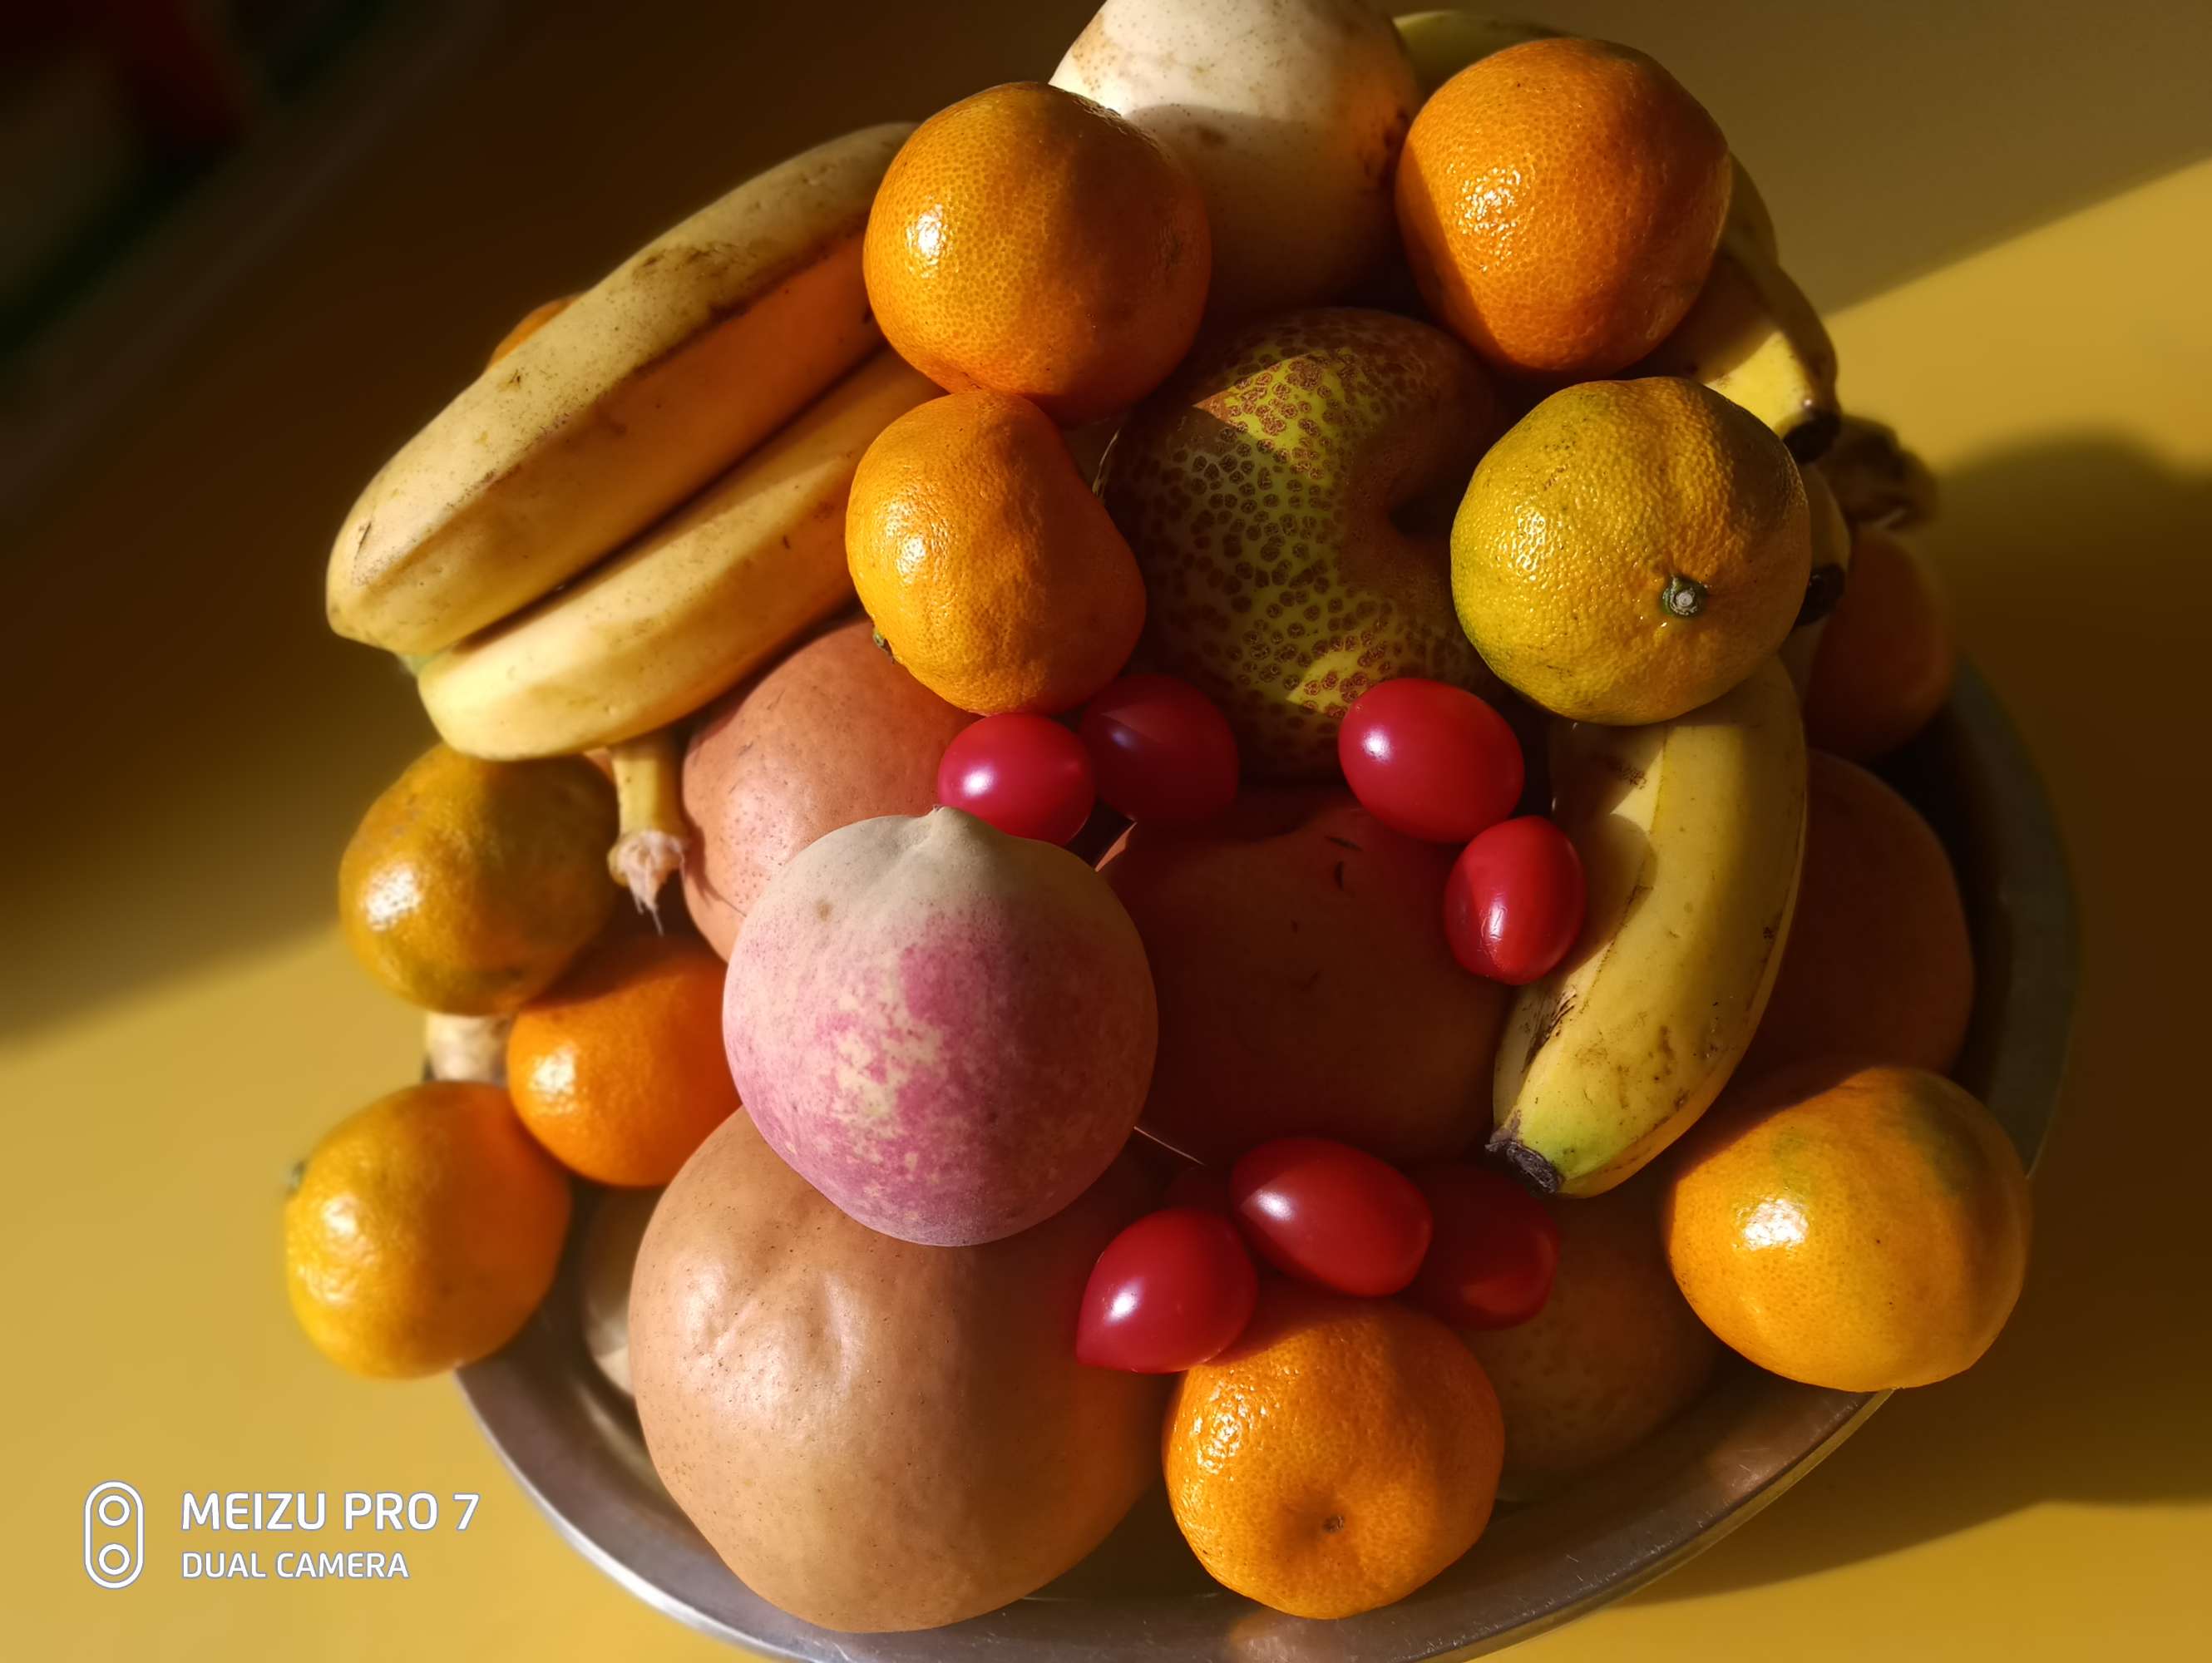 上供最好的五种水果:苹果/橘子/桃子/香蕉/橙子(数量讲究)